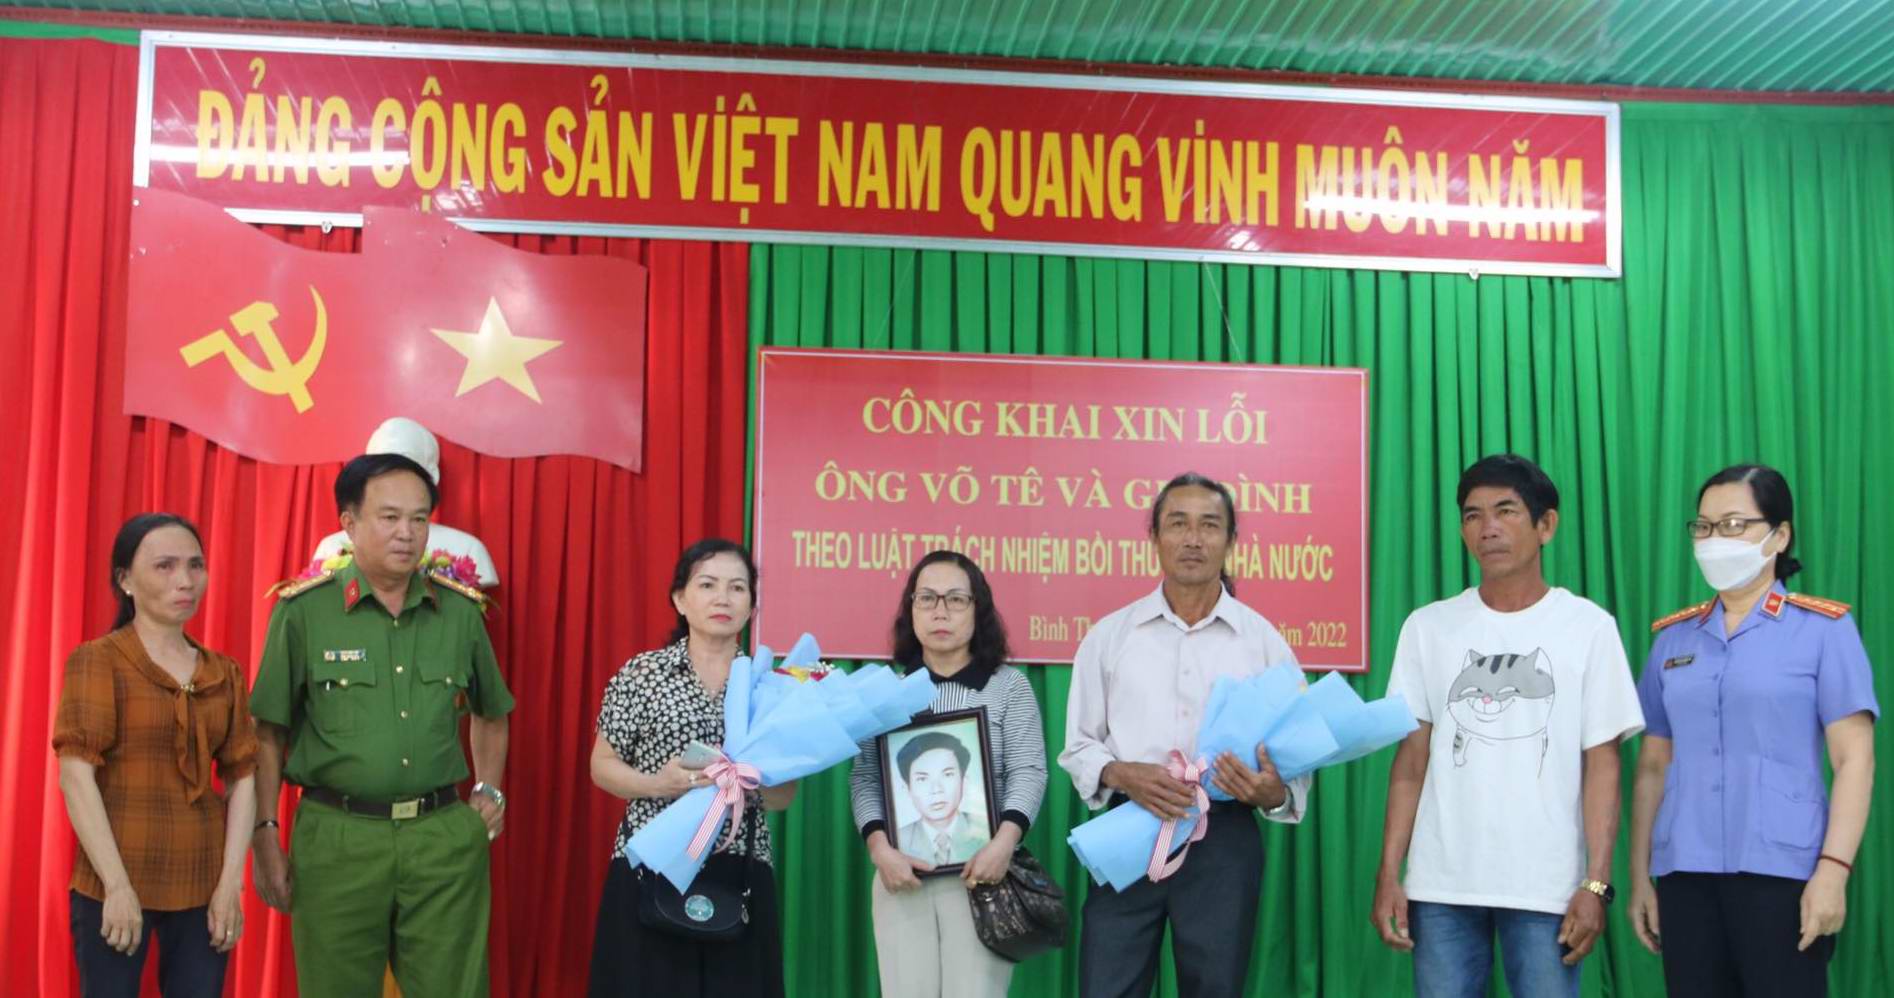 Bình Thuận: Xin lỗi công khai gia đình ông Võ Tê về vụ giết người hơn 40 năm mới tìm ra hung thủ - Ảnh 2.